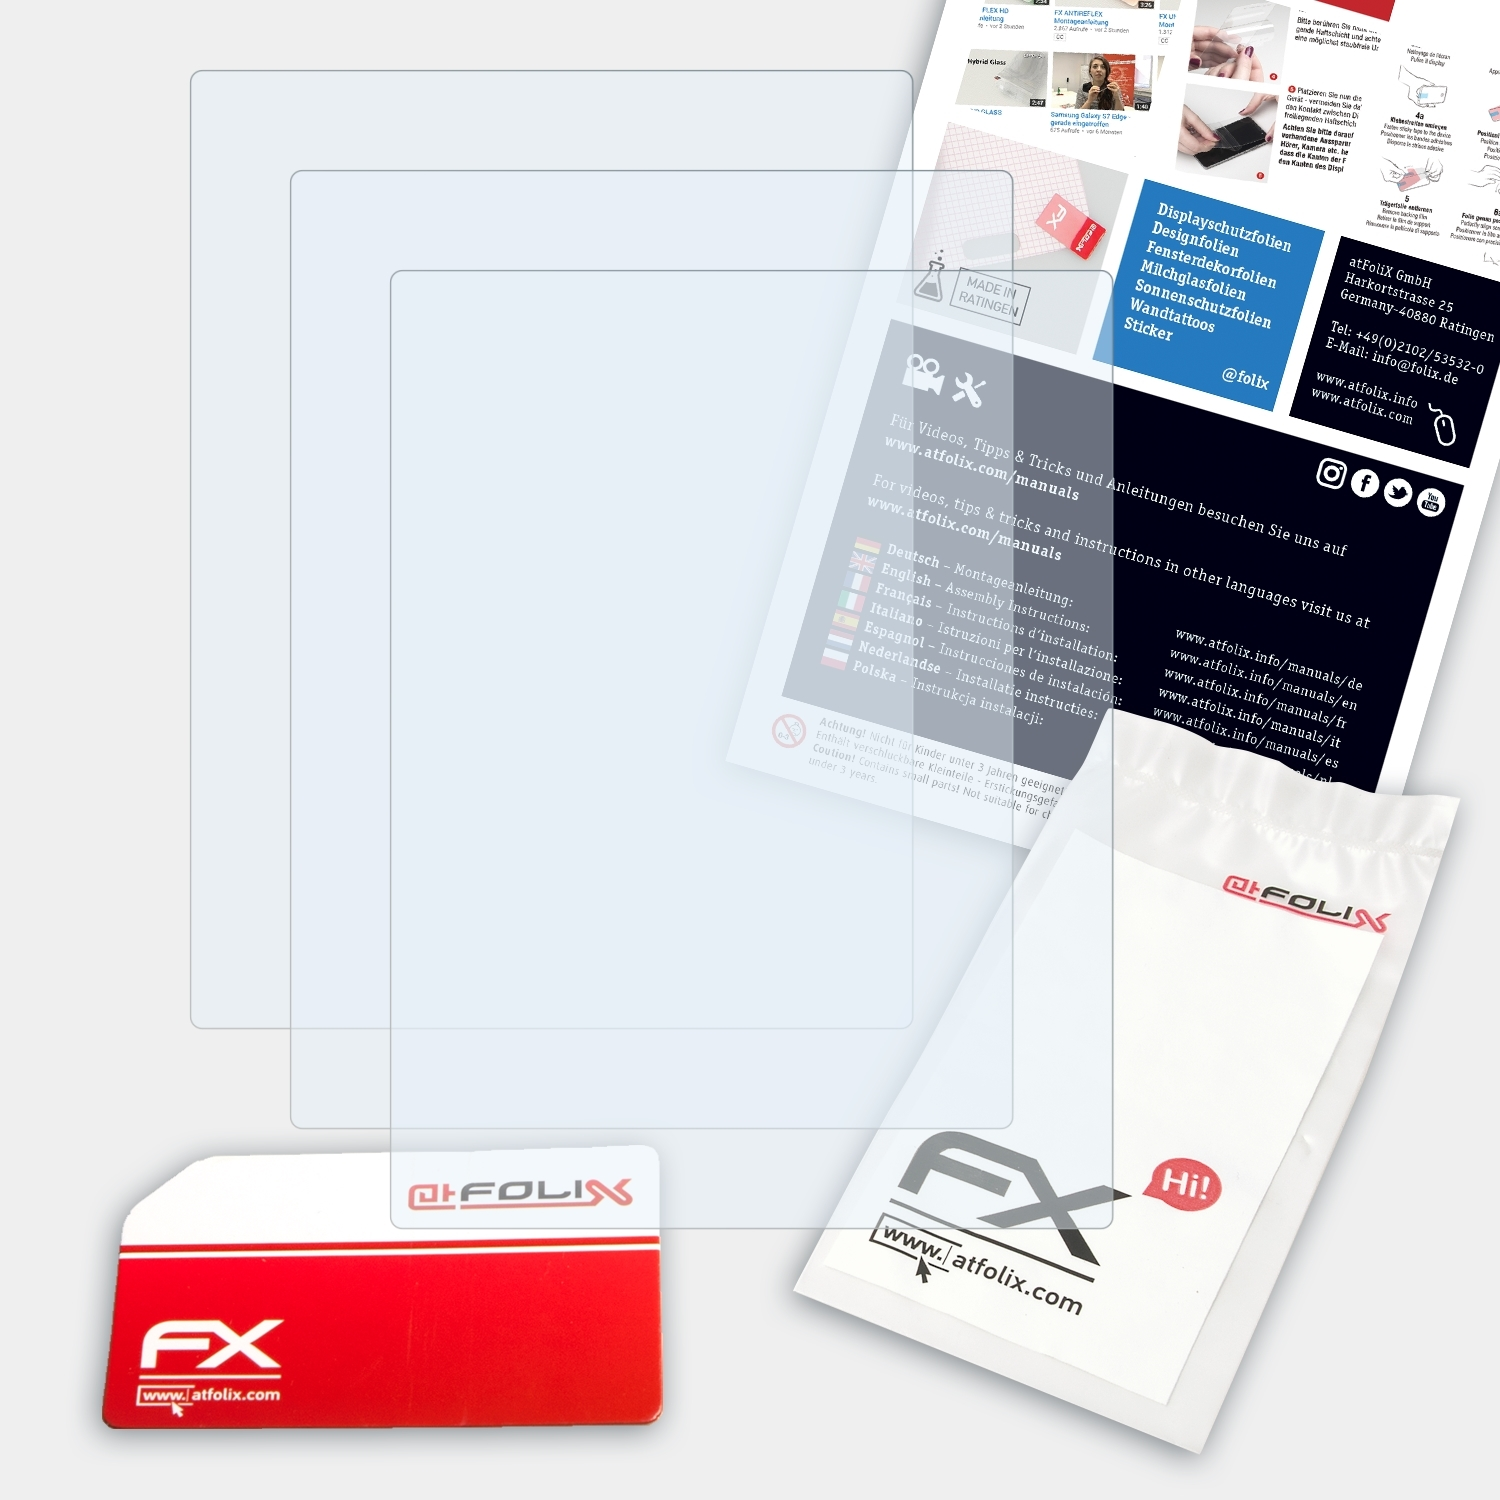 ATFOLIX 3x FX-Clear Displayschutz(für Cedar) Sony-Ericsson